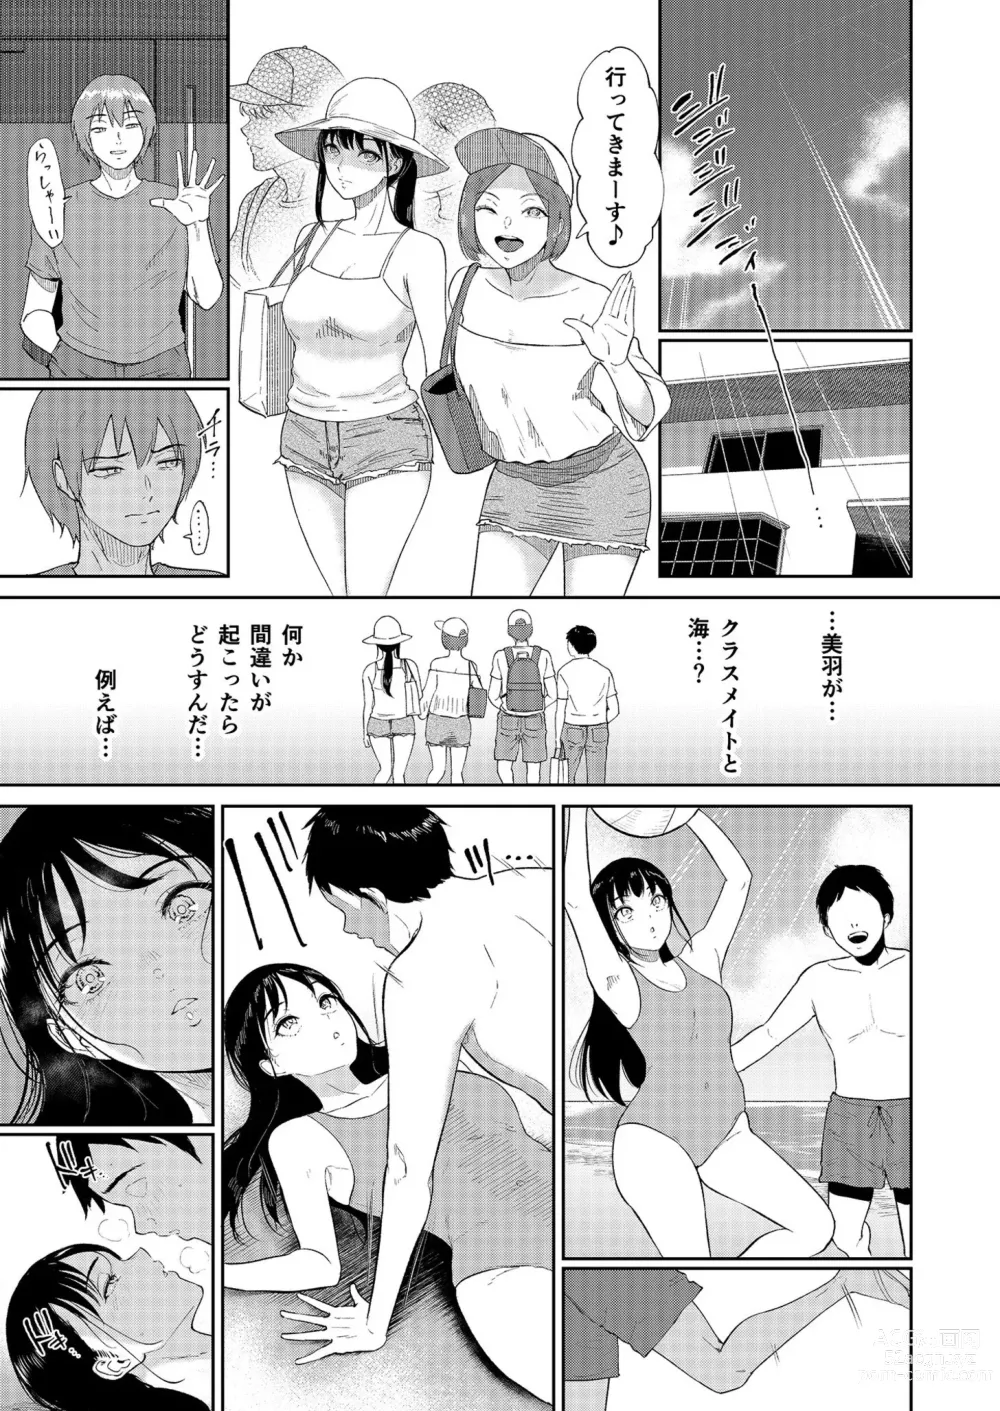 Page 9 of manga Iinarikko 4